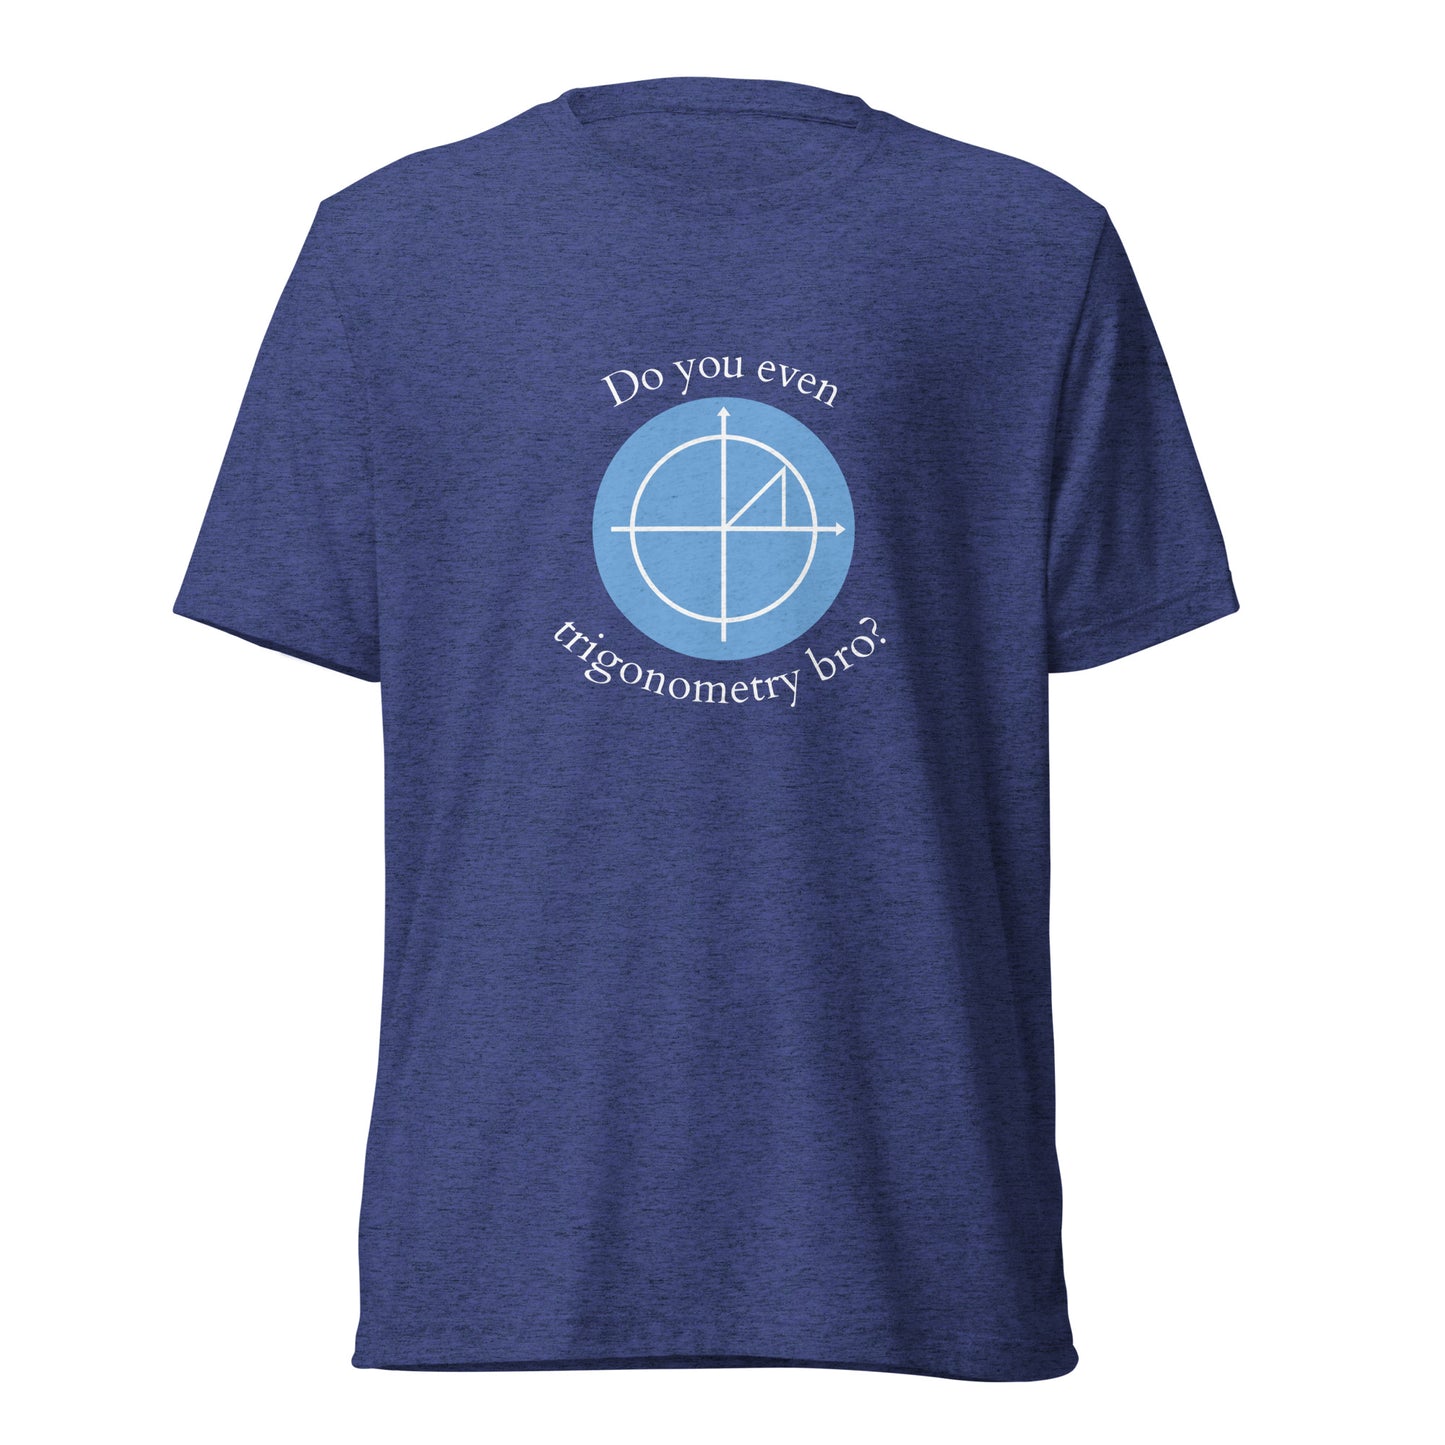 do you even trigonometry bro? t-shirt